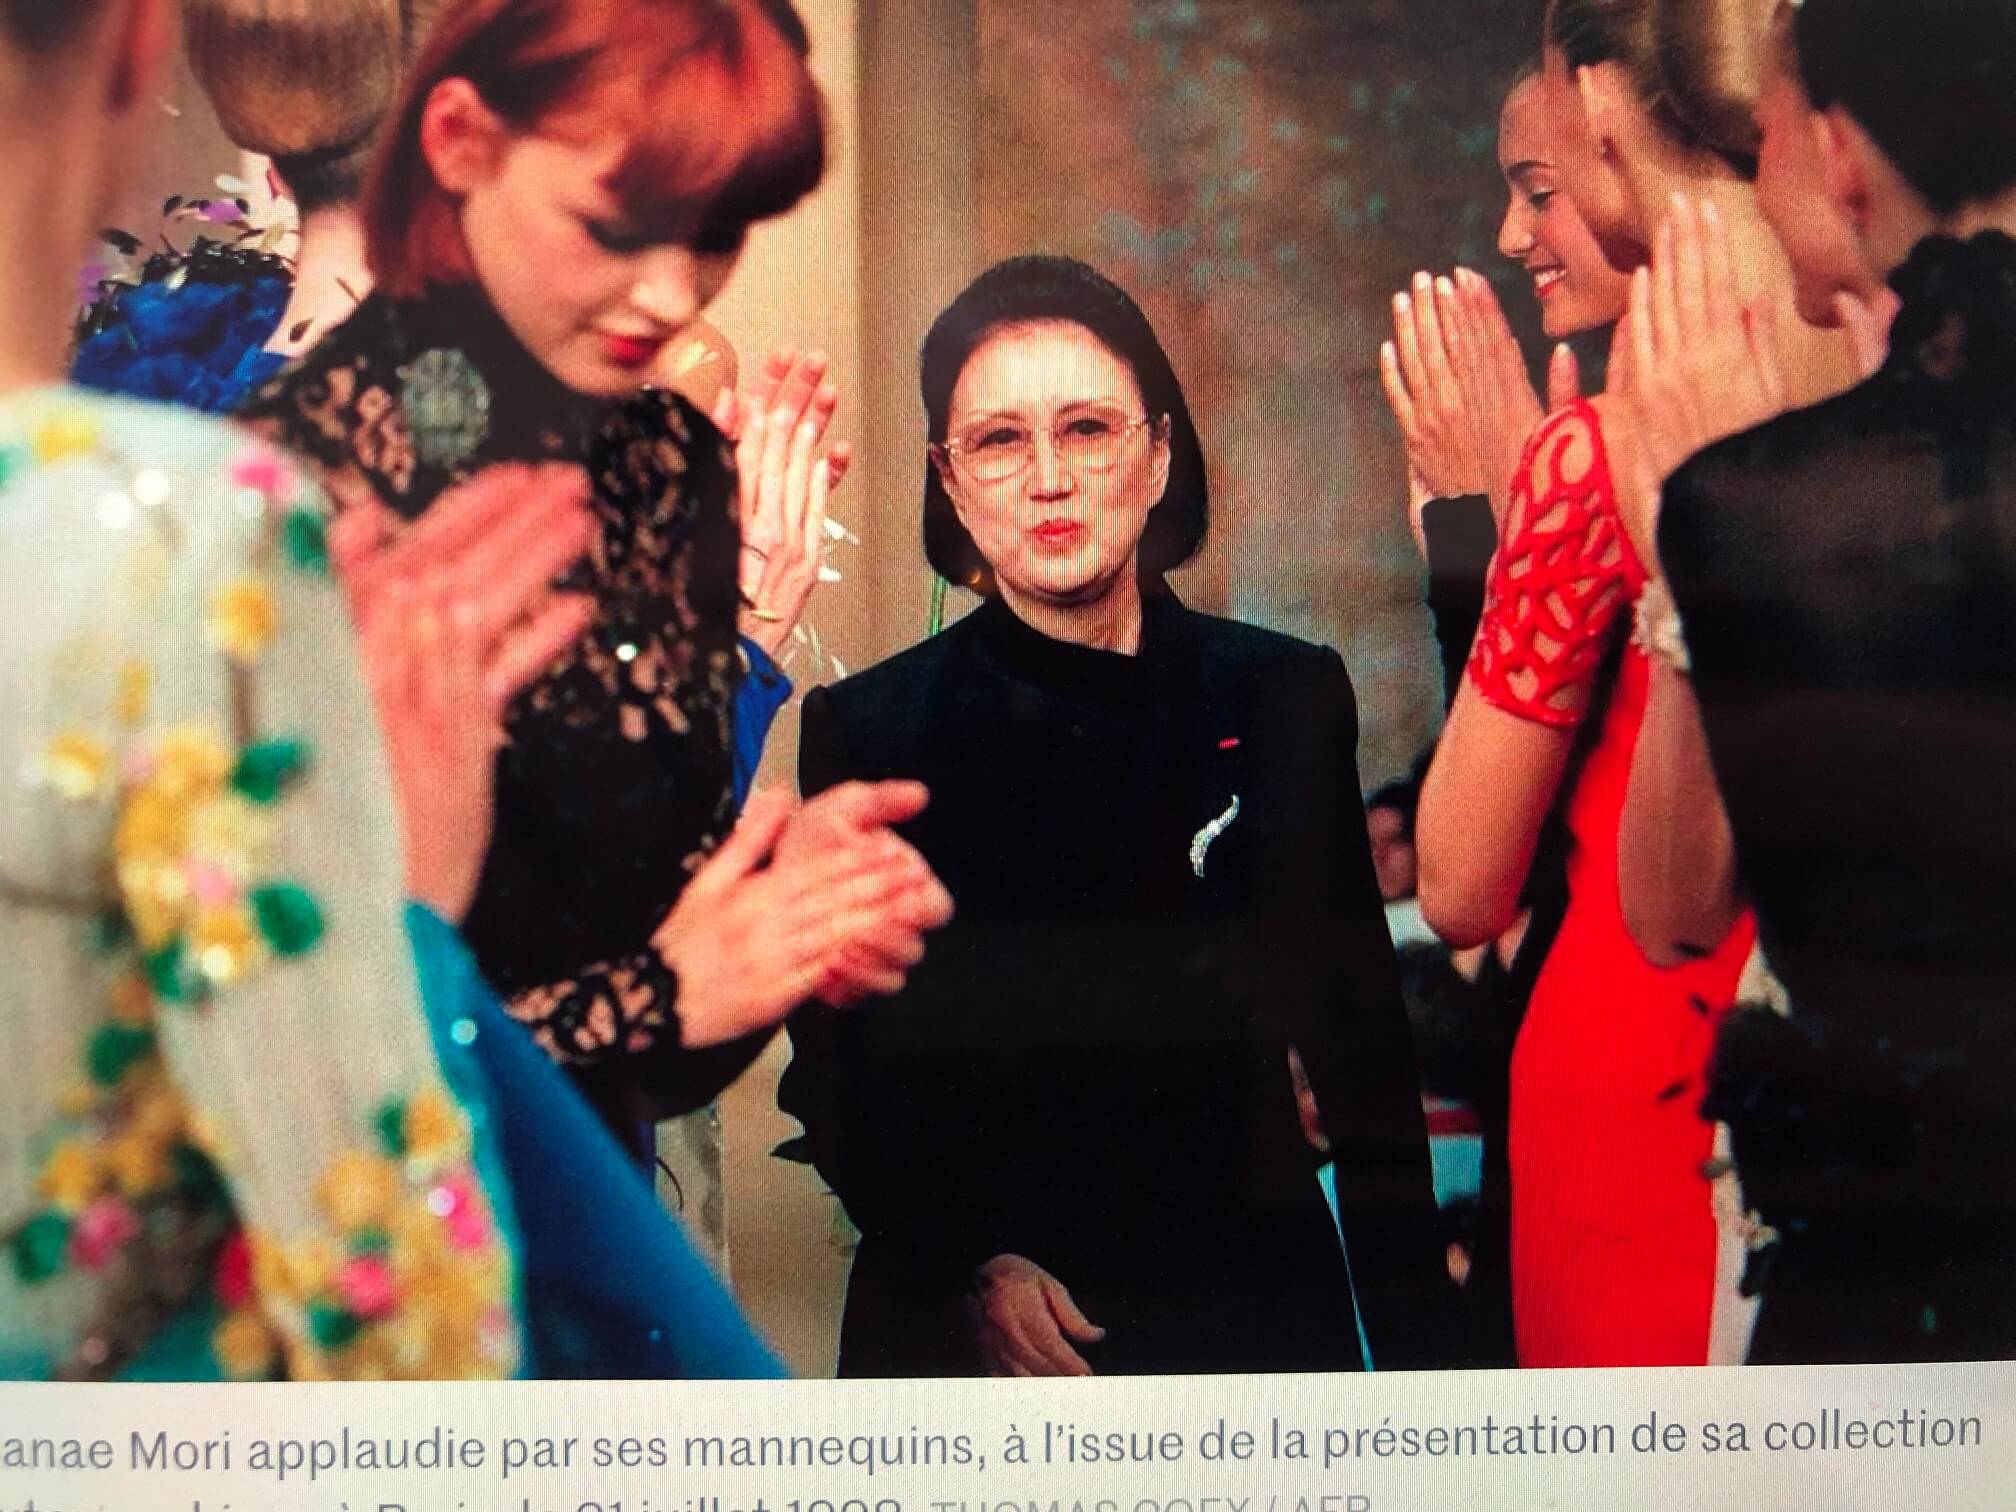 パリ最新情報「森英恵さん死去、『女性解放のパイオニア』と仏メディアが報じる」